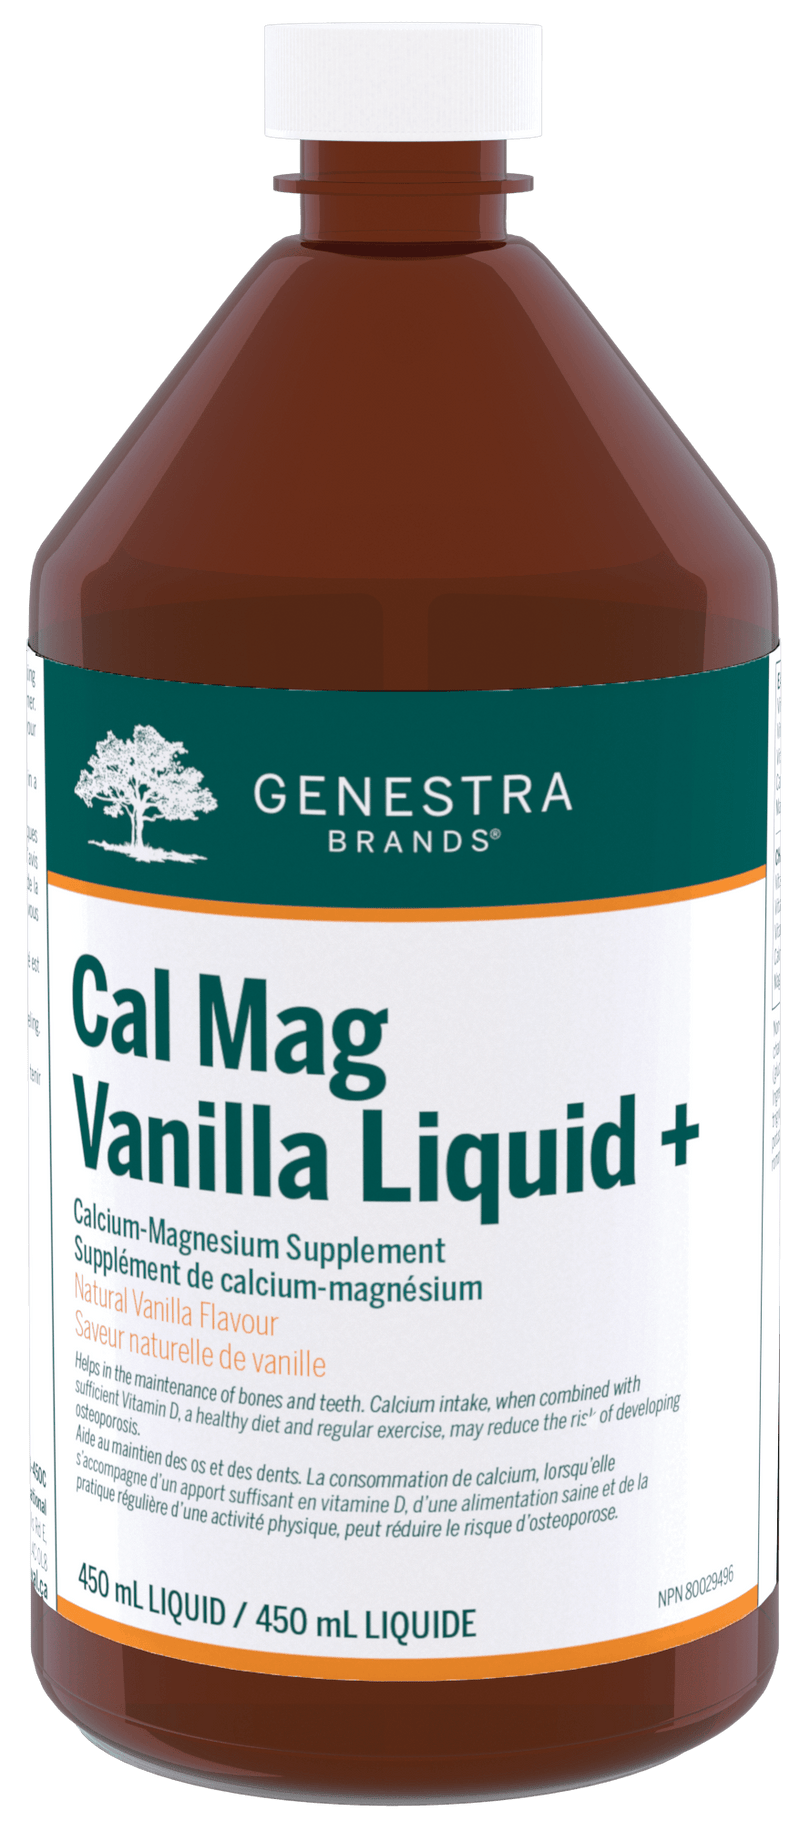 Genestra Cal Mag Vanilla Liquid + 450mL  - Five Natural